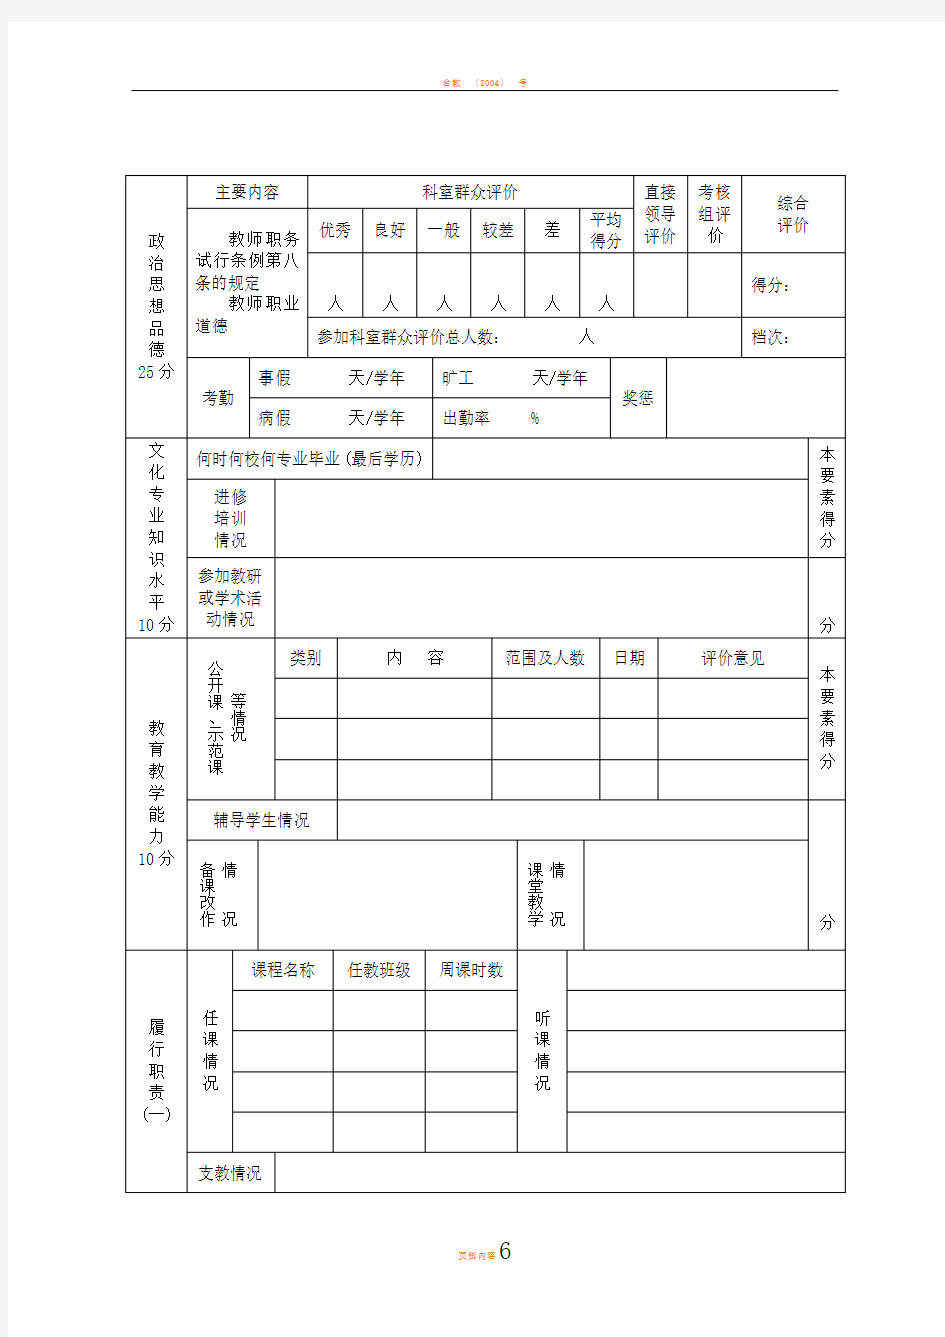 台州市中小学教师考核表(模板)